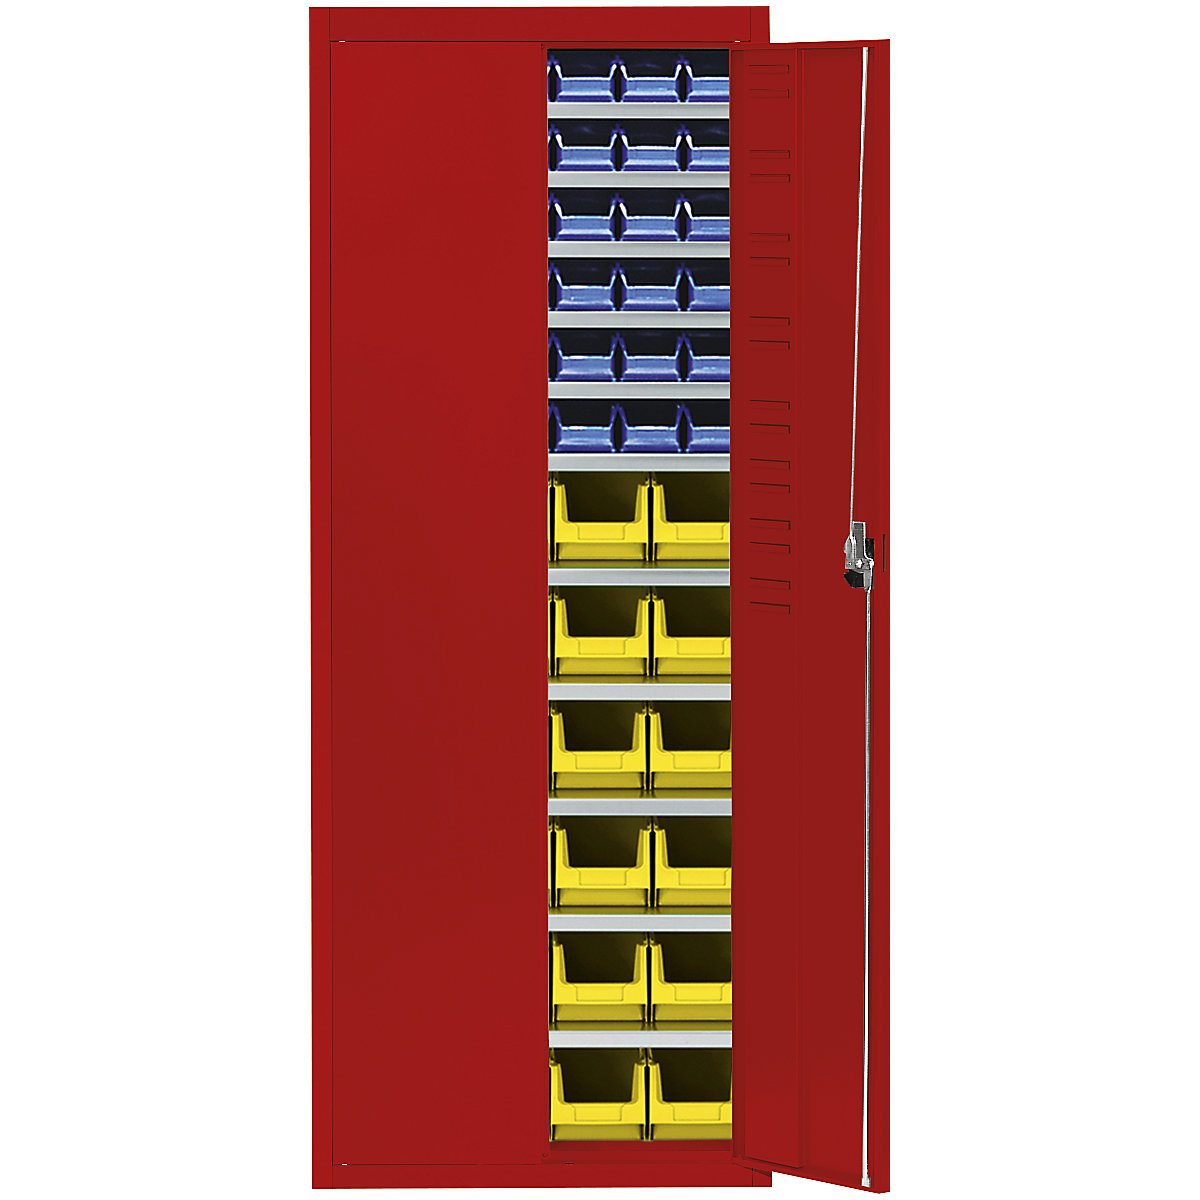 Skladiščna omara z odprtimi skladiščnimi posodami – mauser, VxŠxG 1740 x 680 x 280 mm, ena barva, rdeča, 60 posod-11